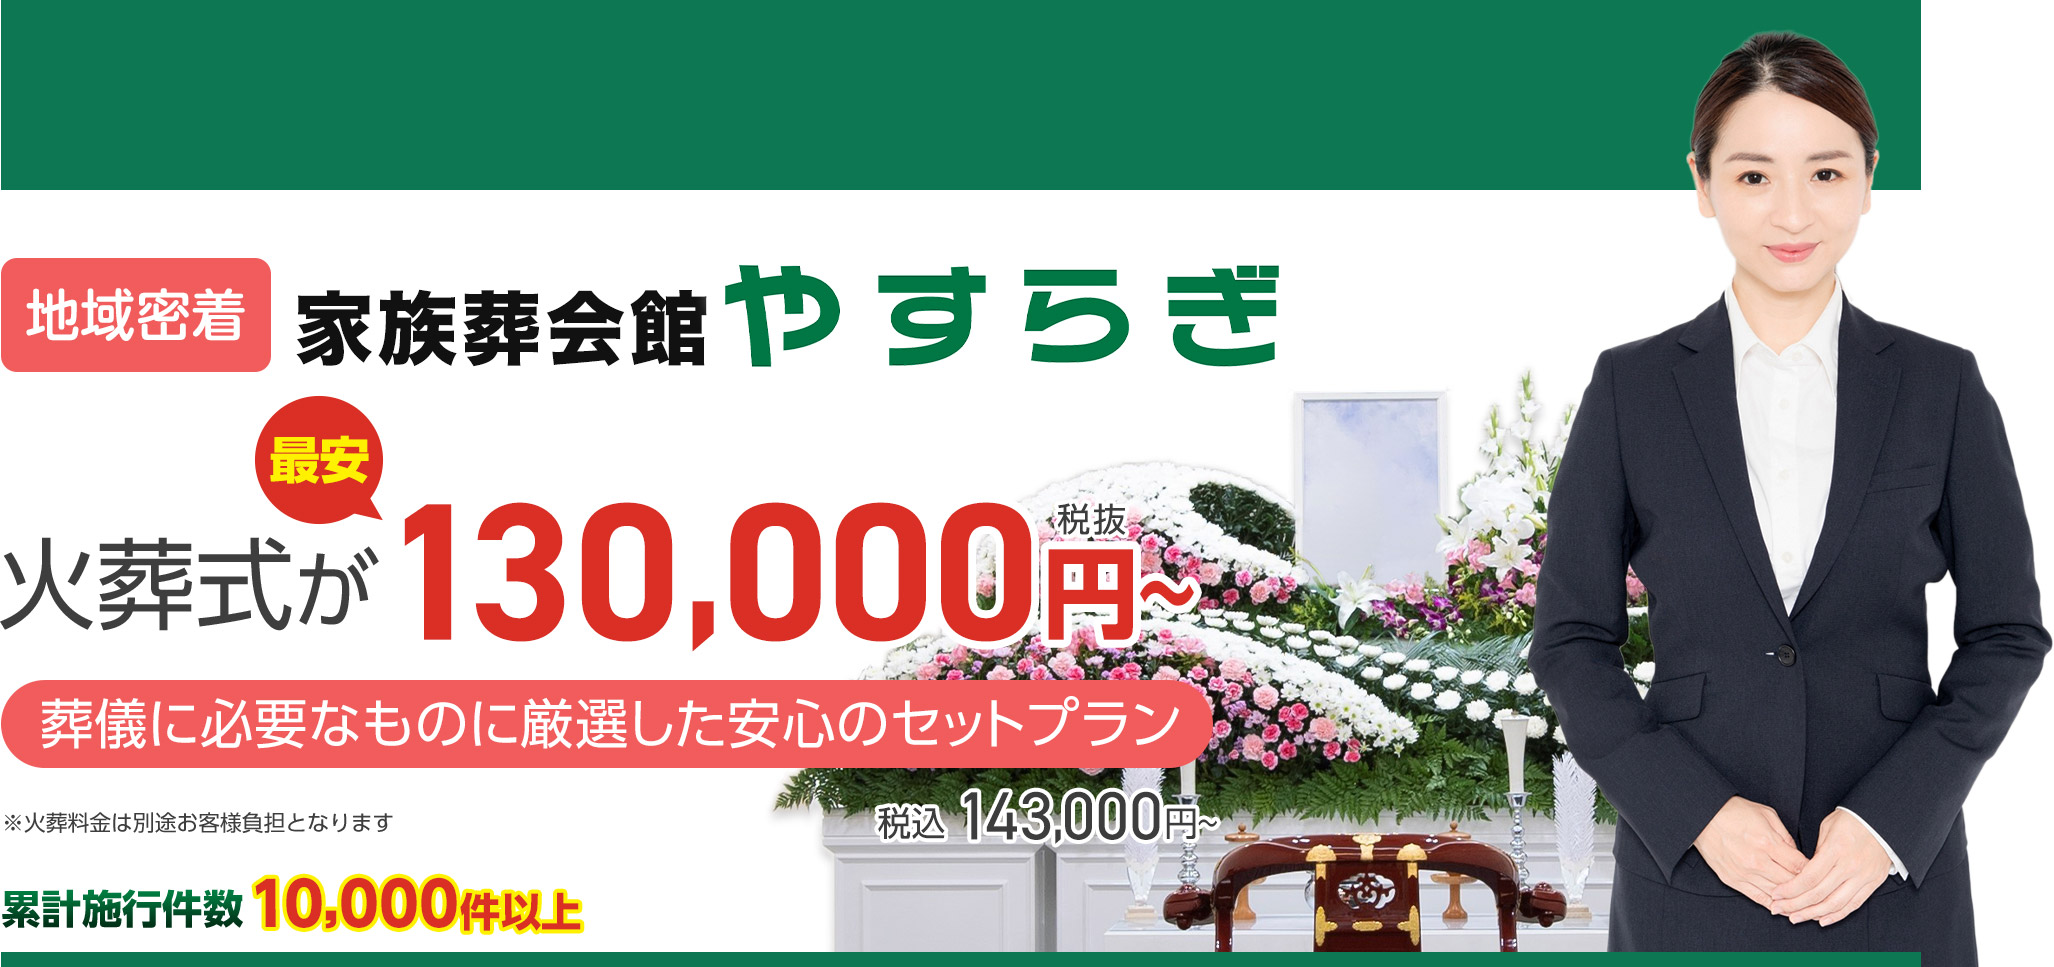 松本市で家族葬をお探しなら 近くて安心の葬儀・家族葬がWEB限定税抜95,000円